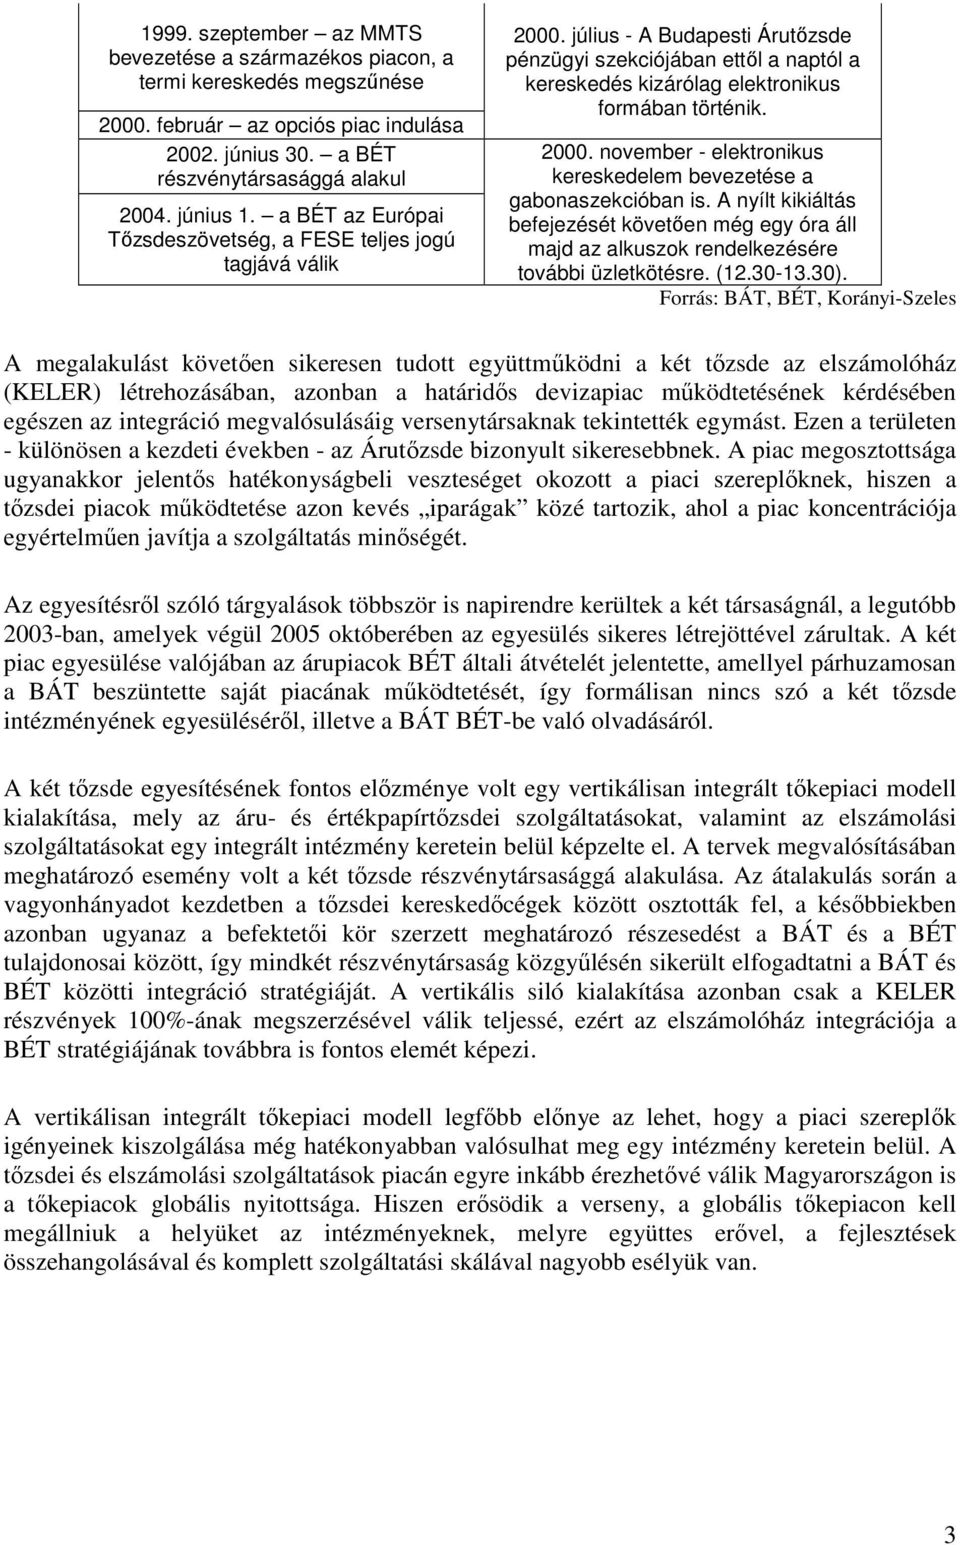 2000. november - elektronikus kereskedelem bevezetése a gabonaszekcióban is. A nyílt kikiáltás befejezését követıen még egy óra áll majd az alkuszok rendelkezésére további üzletkötésre. (12.30-13.30).